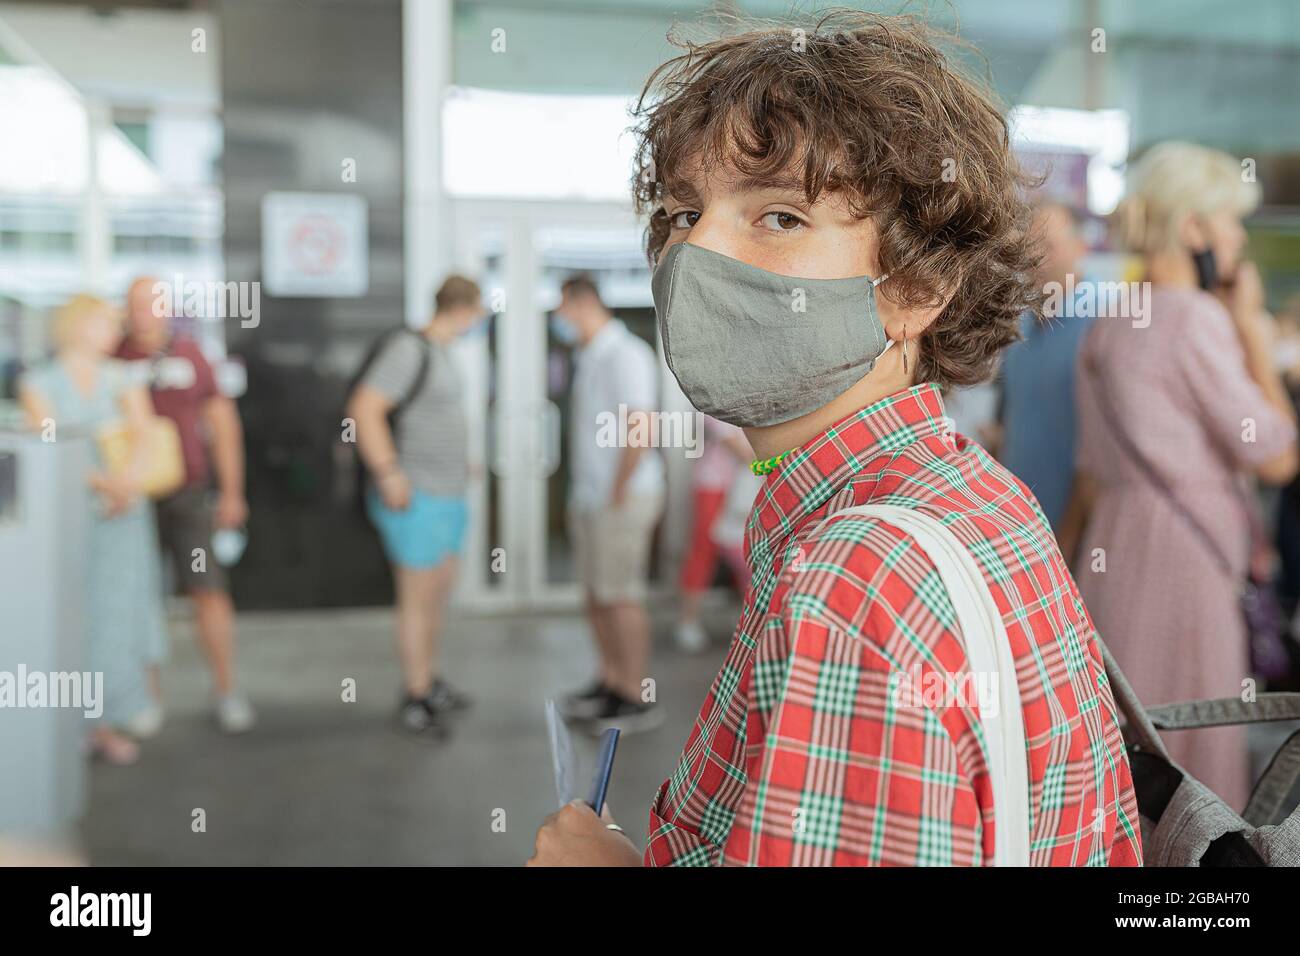 Jeune adolescente dans un masque de protection tenant un passeport et un résultat de test dans ses mains Banque D'Images